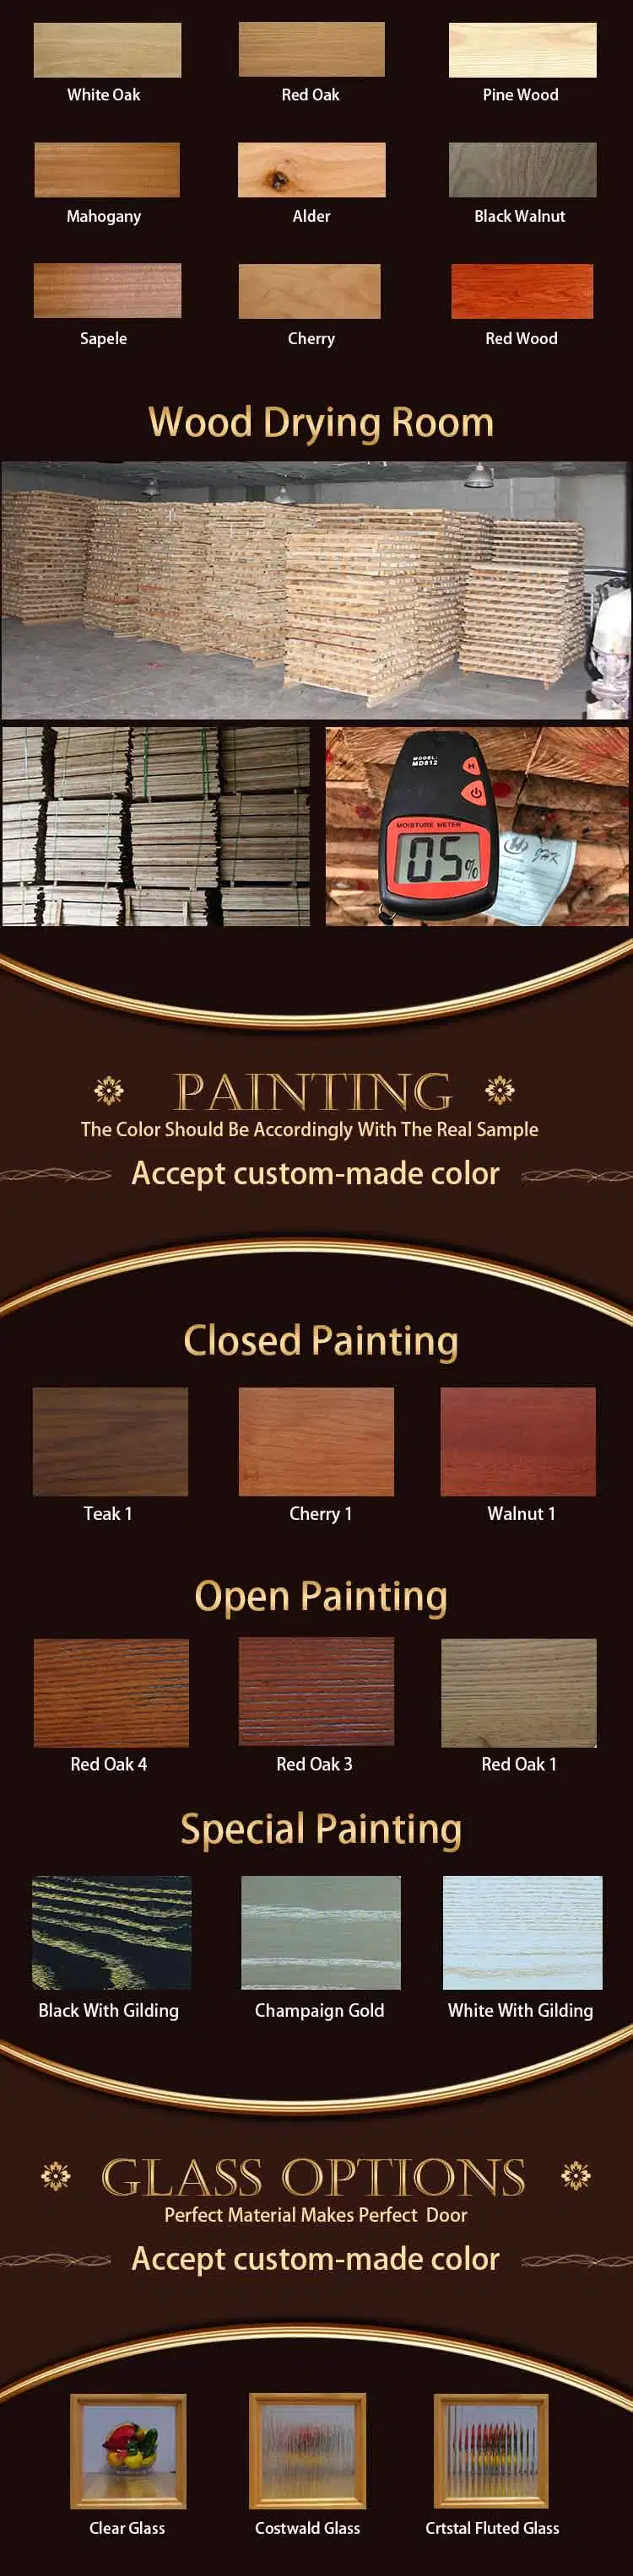 Craftsman Perfect Luxury Interior Carver Wooden Door (JHK-012)